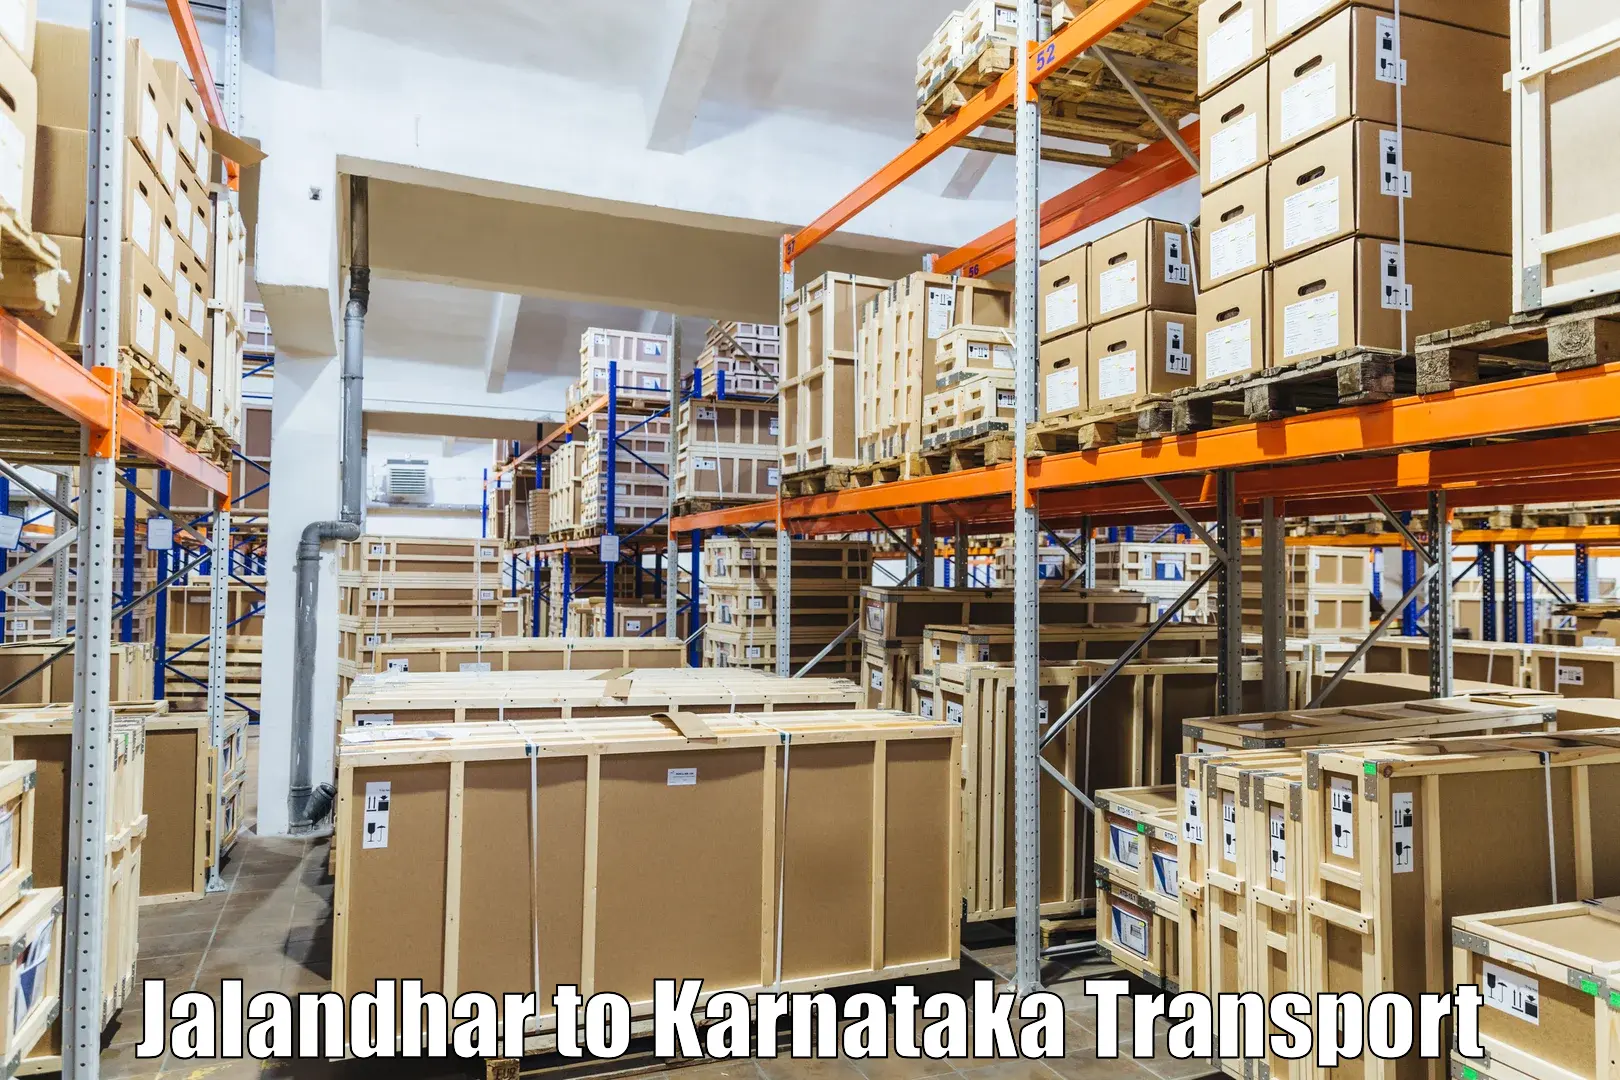 Furniture transport service Jalandhar to Lingasugur